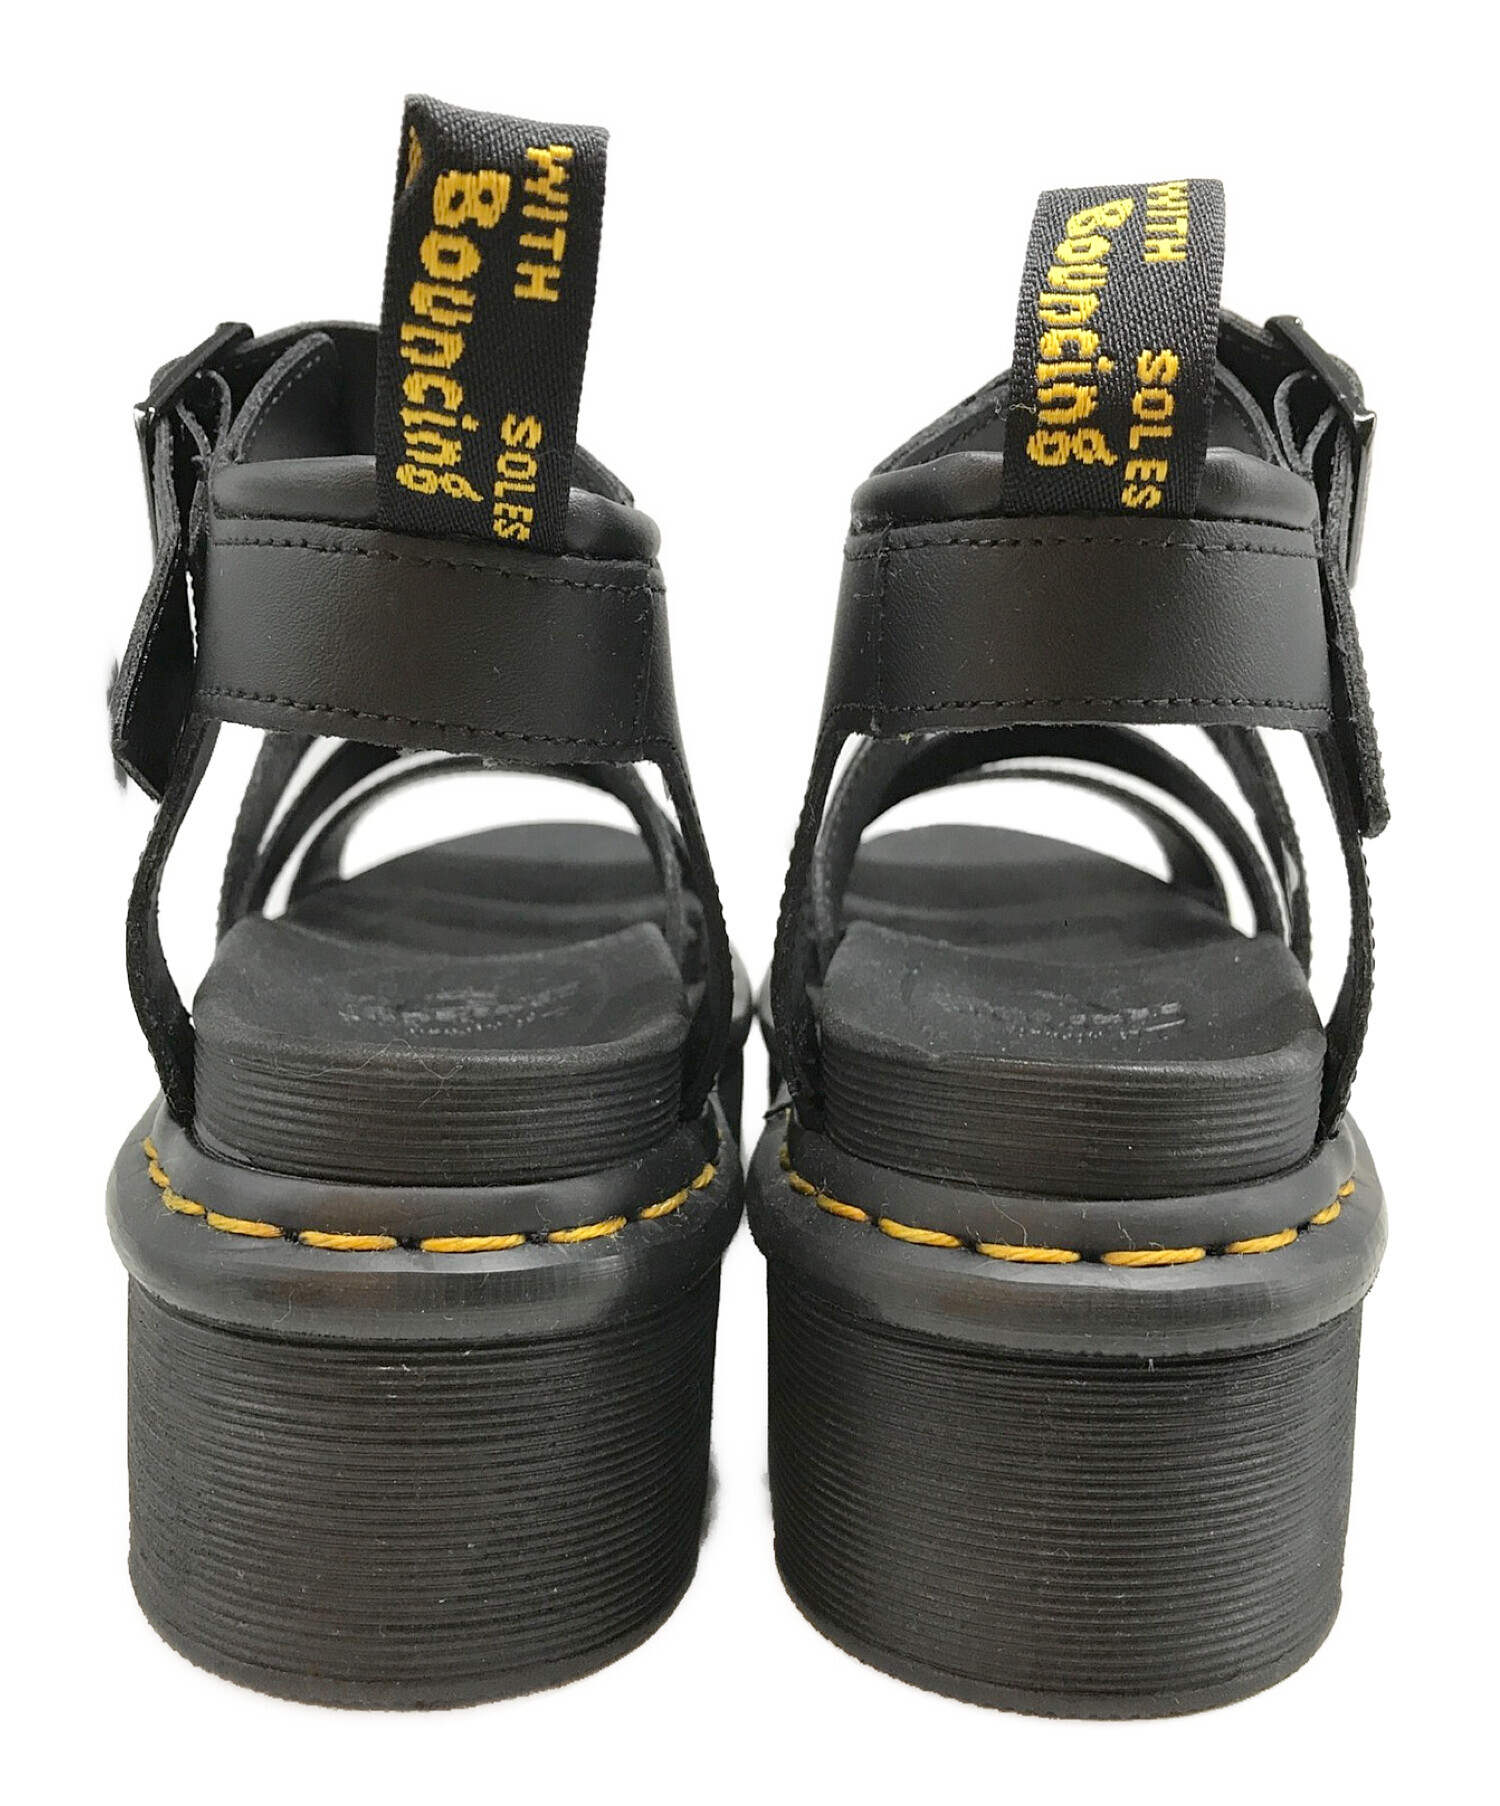 ドクターマーチン サンダル BLAIRE 37 23.5cm - 靴